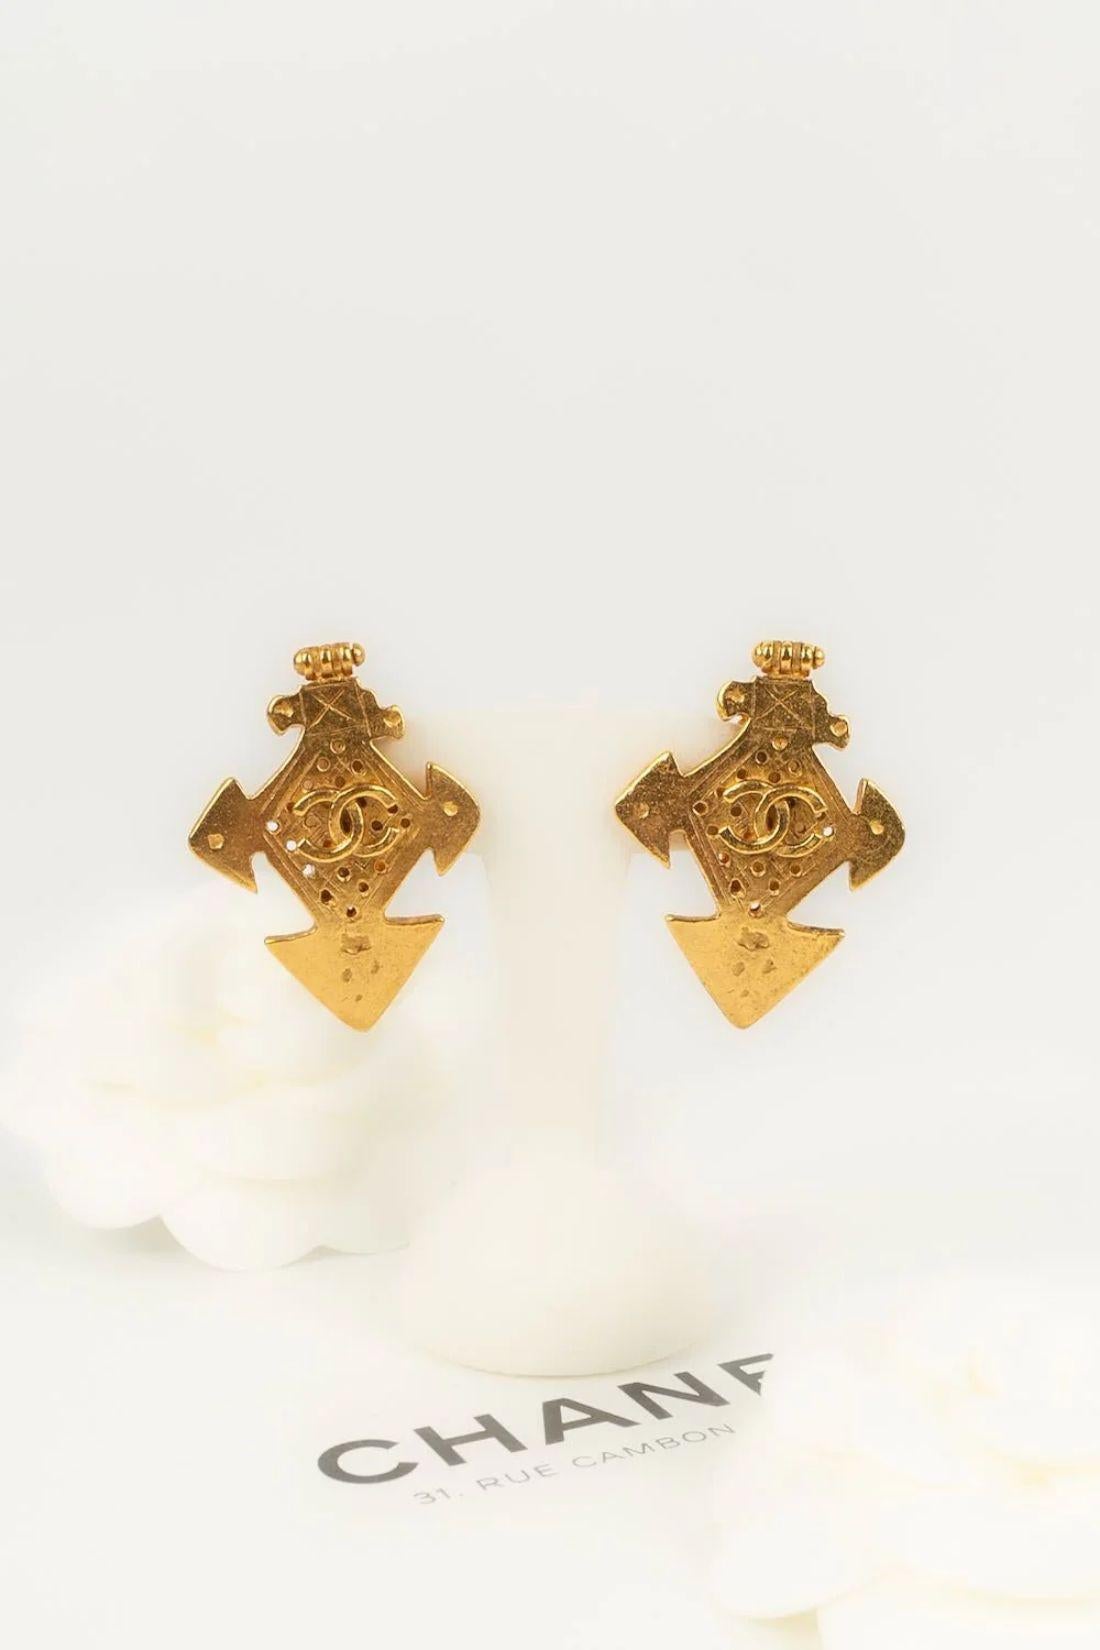 Chanel Earrings in Gold Metal For Sale 2